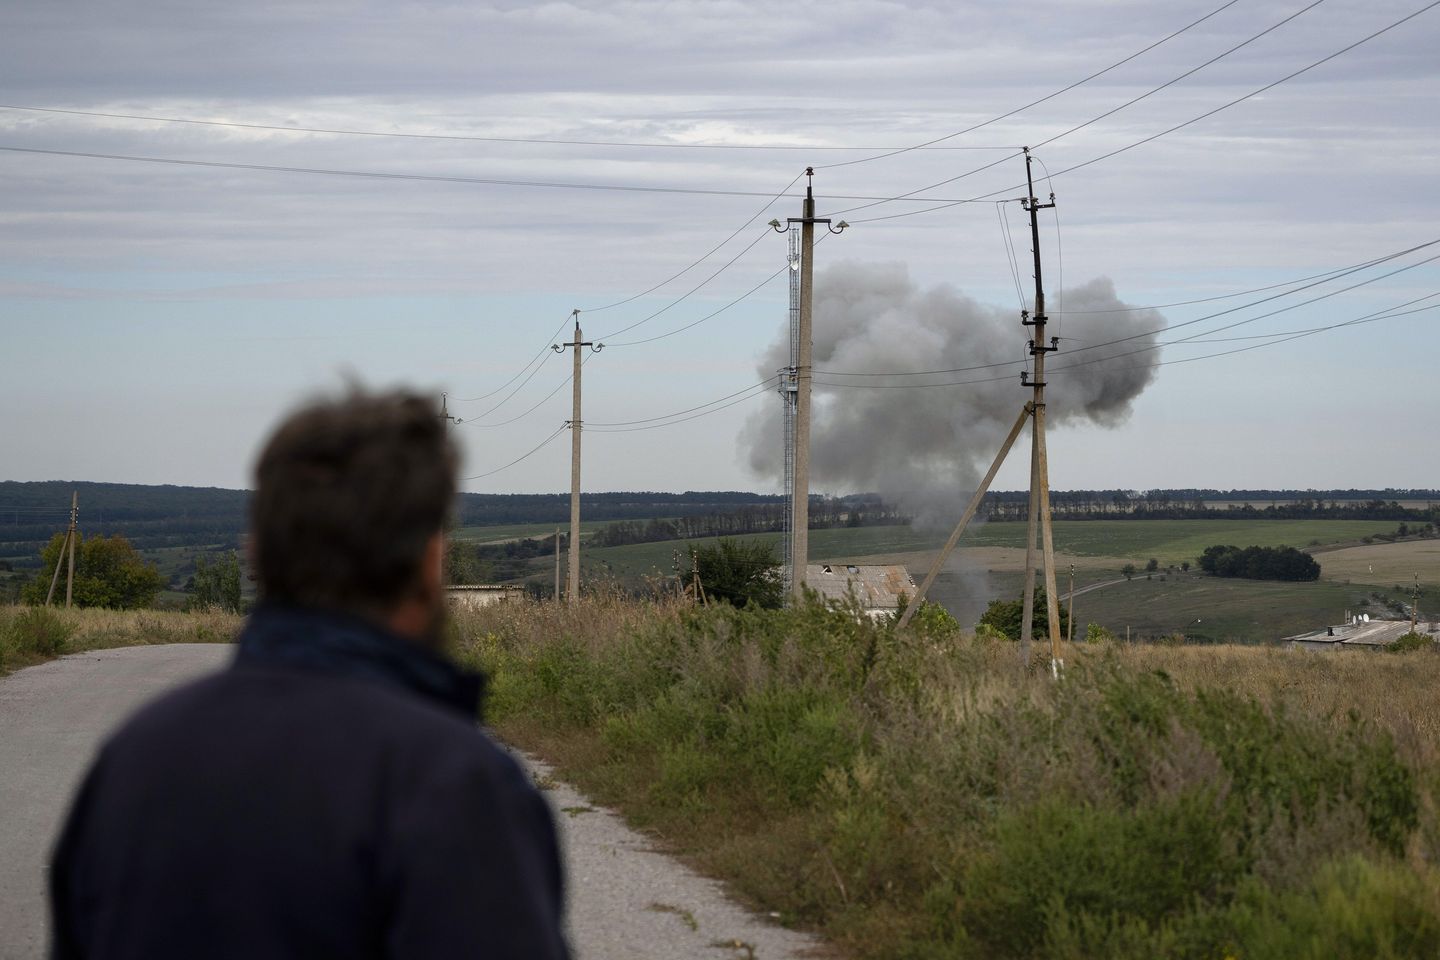 Ön hat çiftçiliği: Bombalar kritik Ukrayna endüstrisini bozuyor